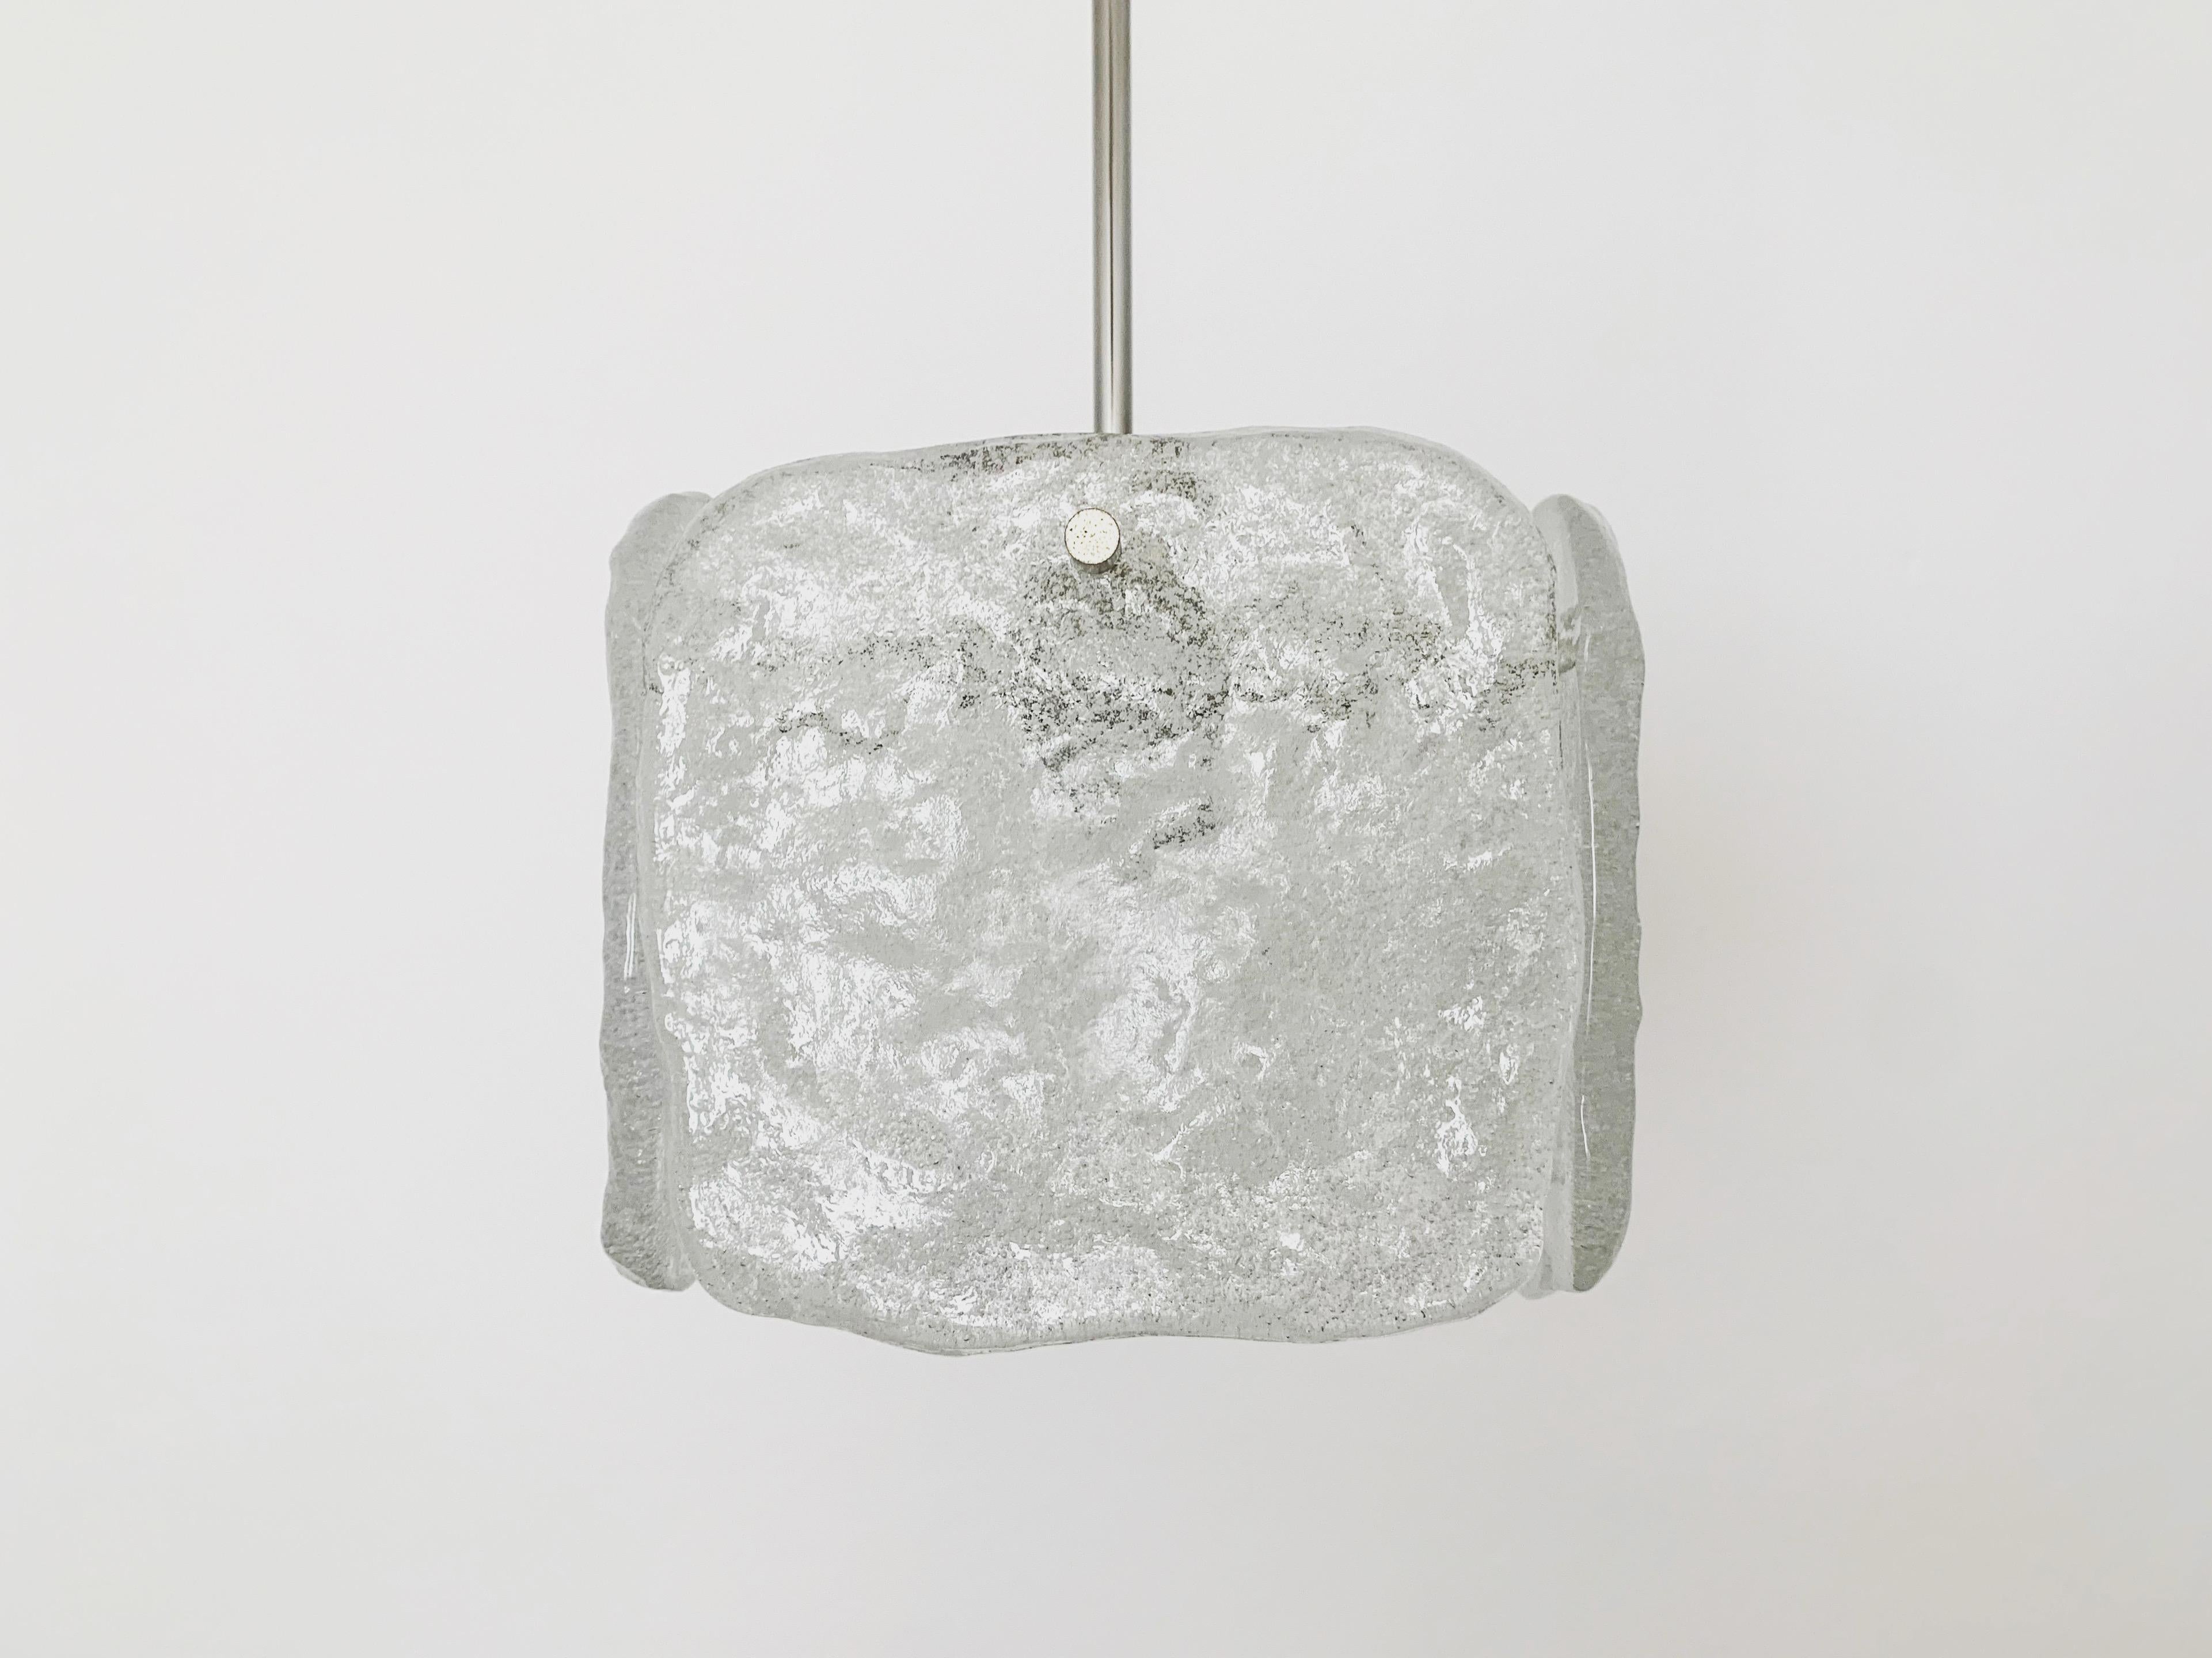 Lampe aus Eisglas von J.T. Kalmar aus den 1960er Jahren.
Die 4 Glaselemente verbreiten ein sehr edles Licht.
Sehr hochwertig verarbeitet und ein echter Blickfang für jede Wohnung.

Bedingung:

Sehr guter Vintage-Zustand mit leichten